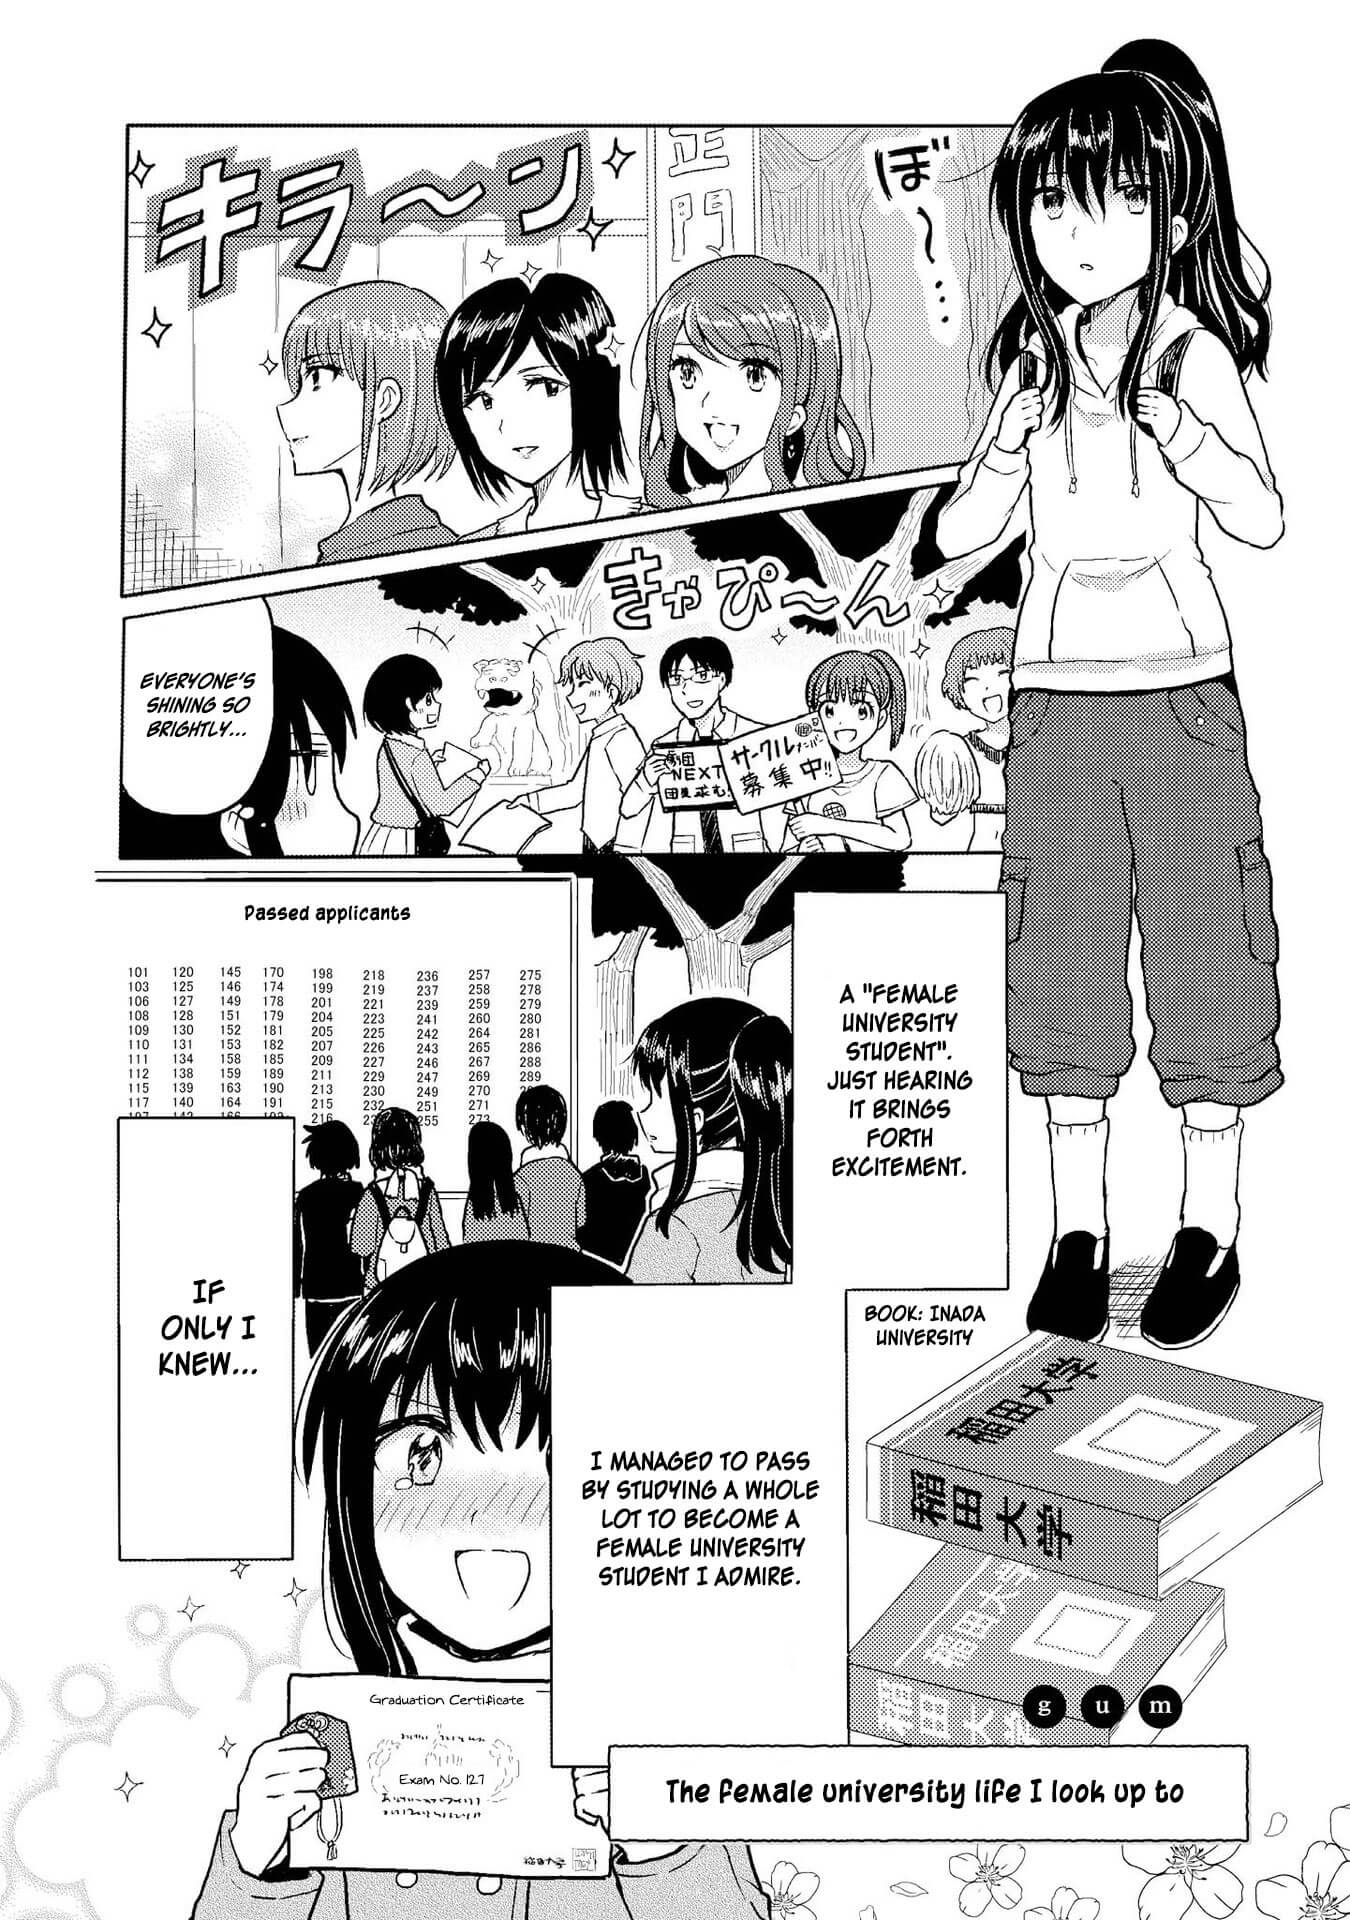 Hyottoshite Gyaru wa Orera ni Yasashii no Dewa? Anthology Comic Vol.1 Chapter 5: The female university life I look up to